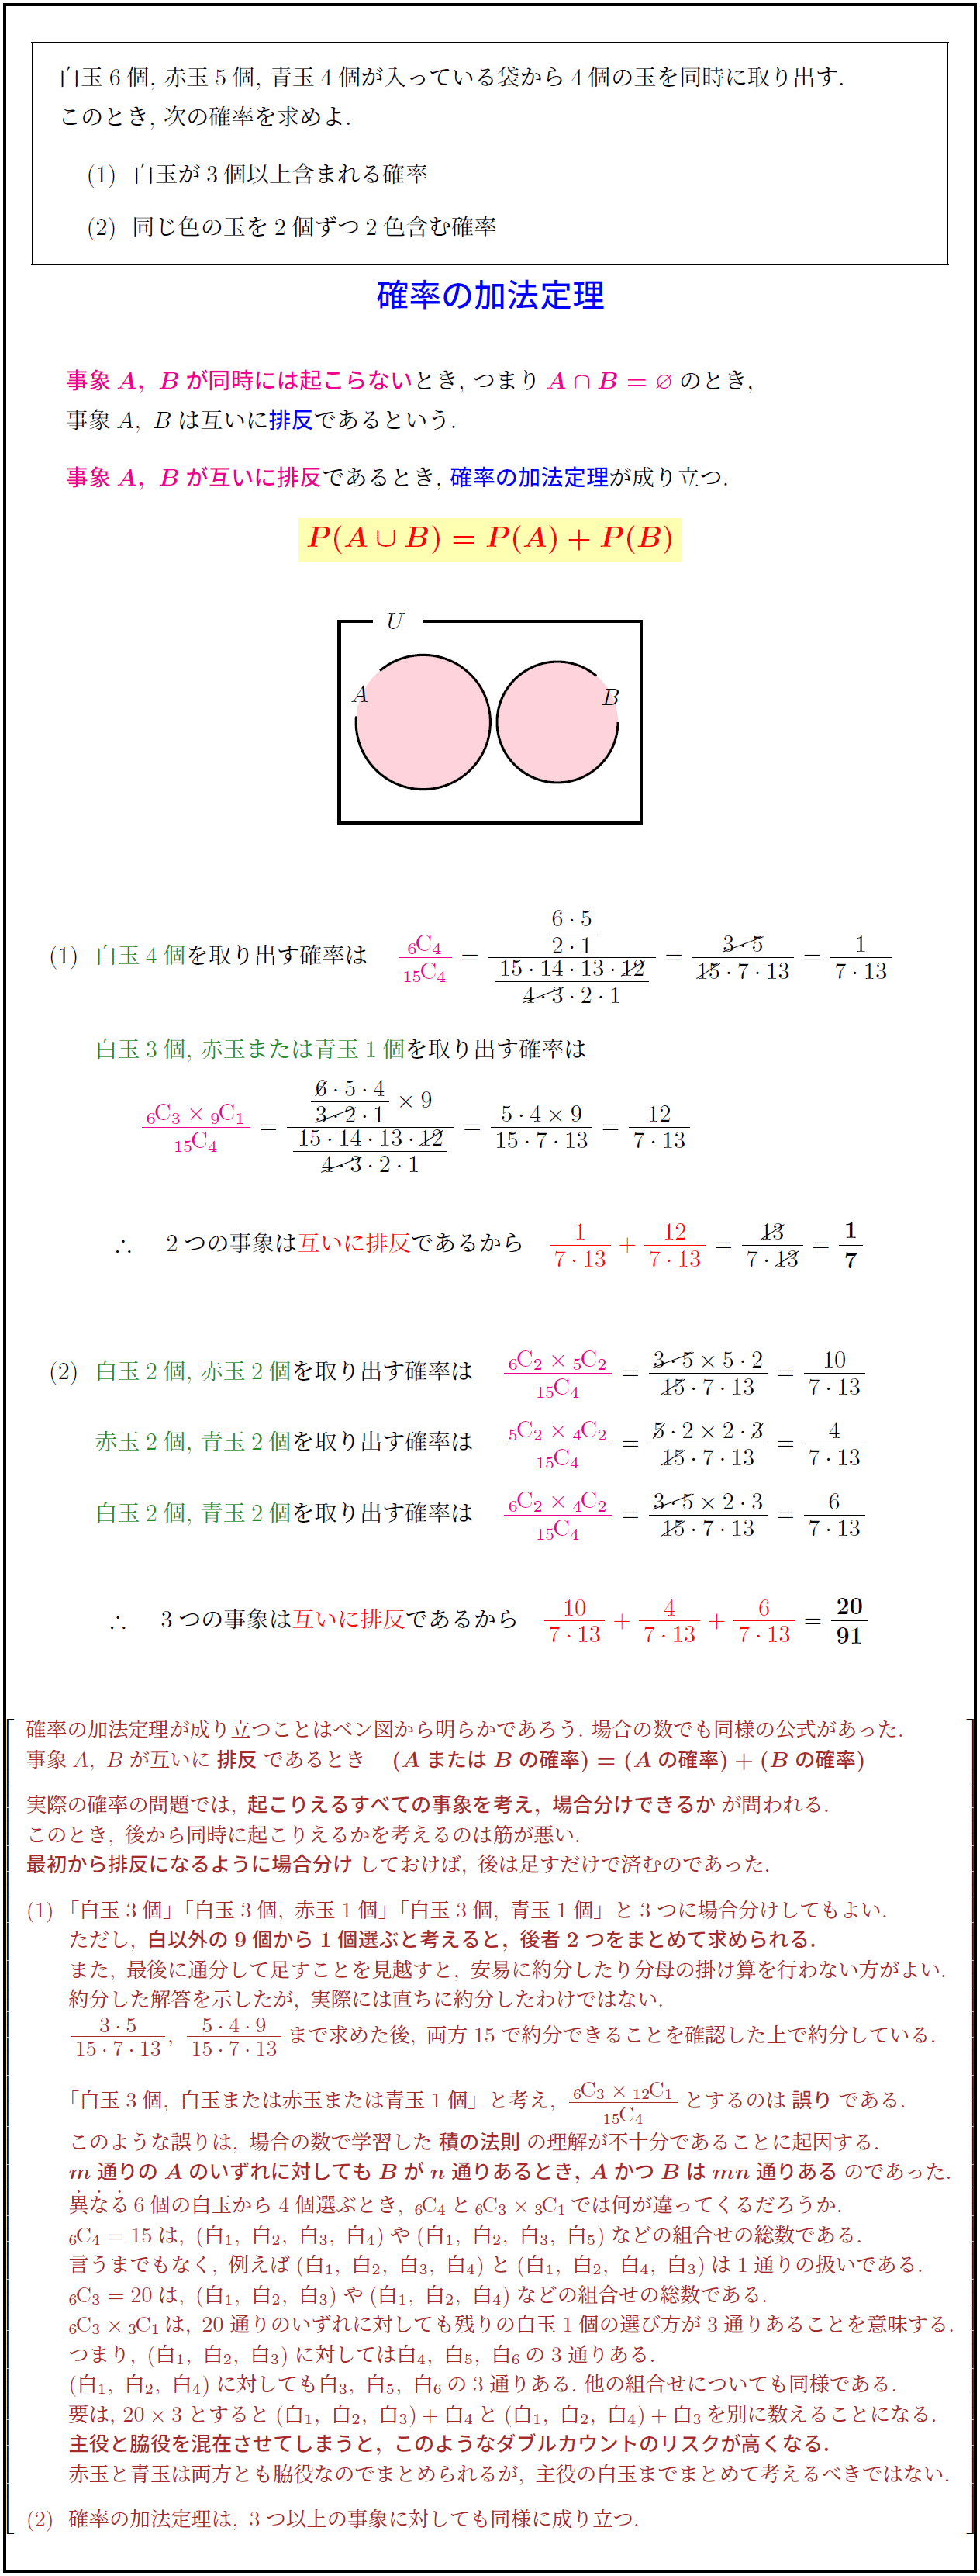 定理 加法 加法定理の証明【最重要公式】の解説と東大で出題された理由